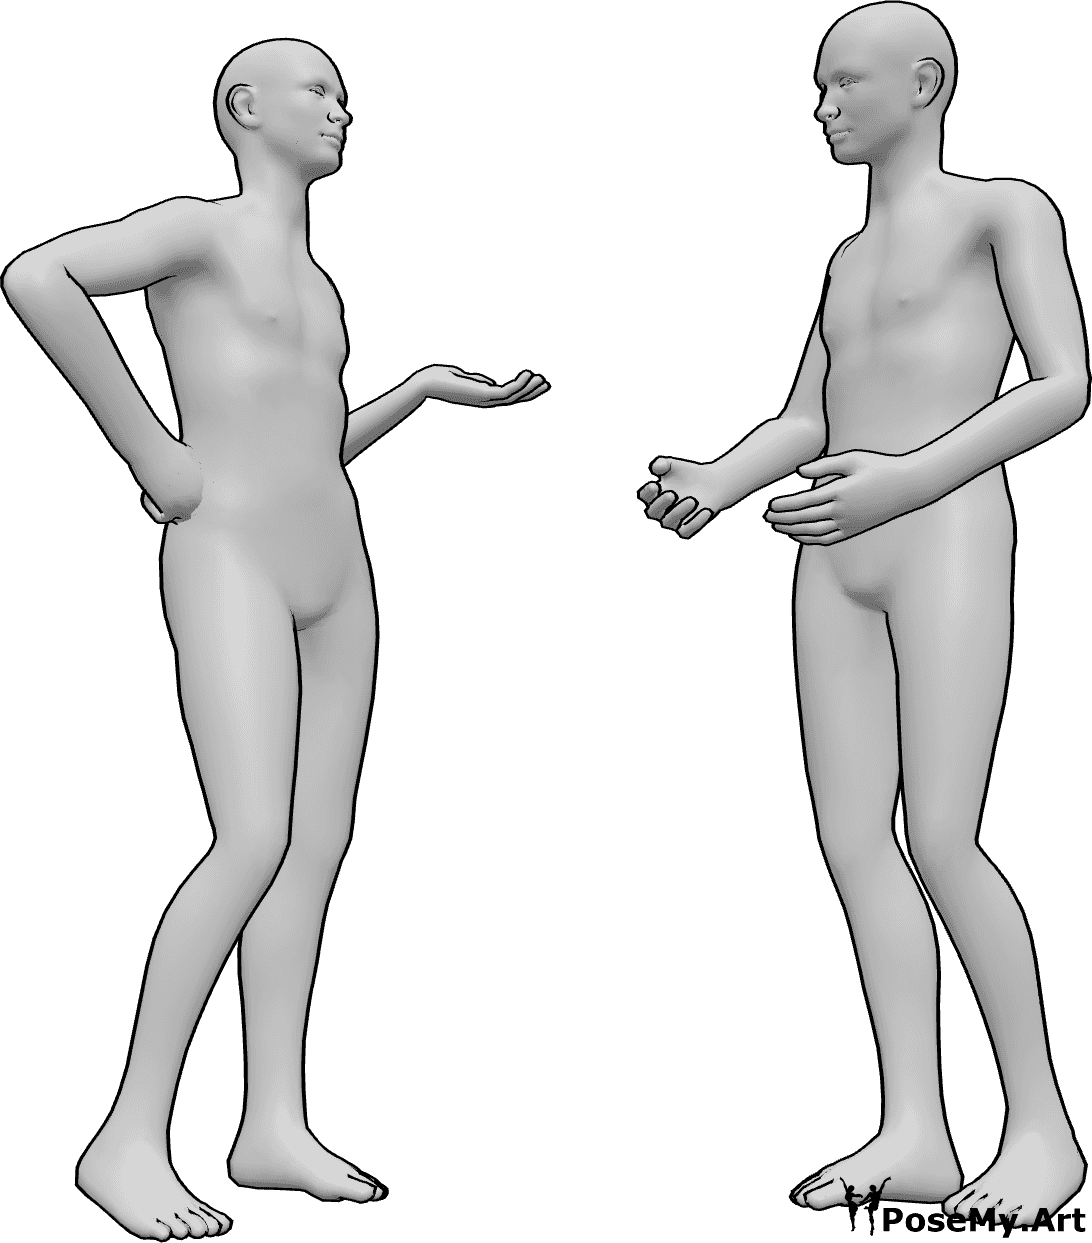 Référence des poses- Hommes debout en train de parler - Deux hommes sont debout et discutent, ayant une conversation décontractée.